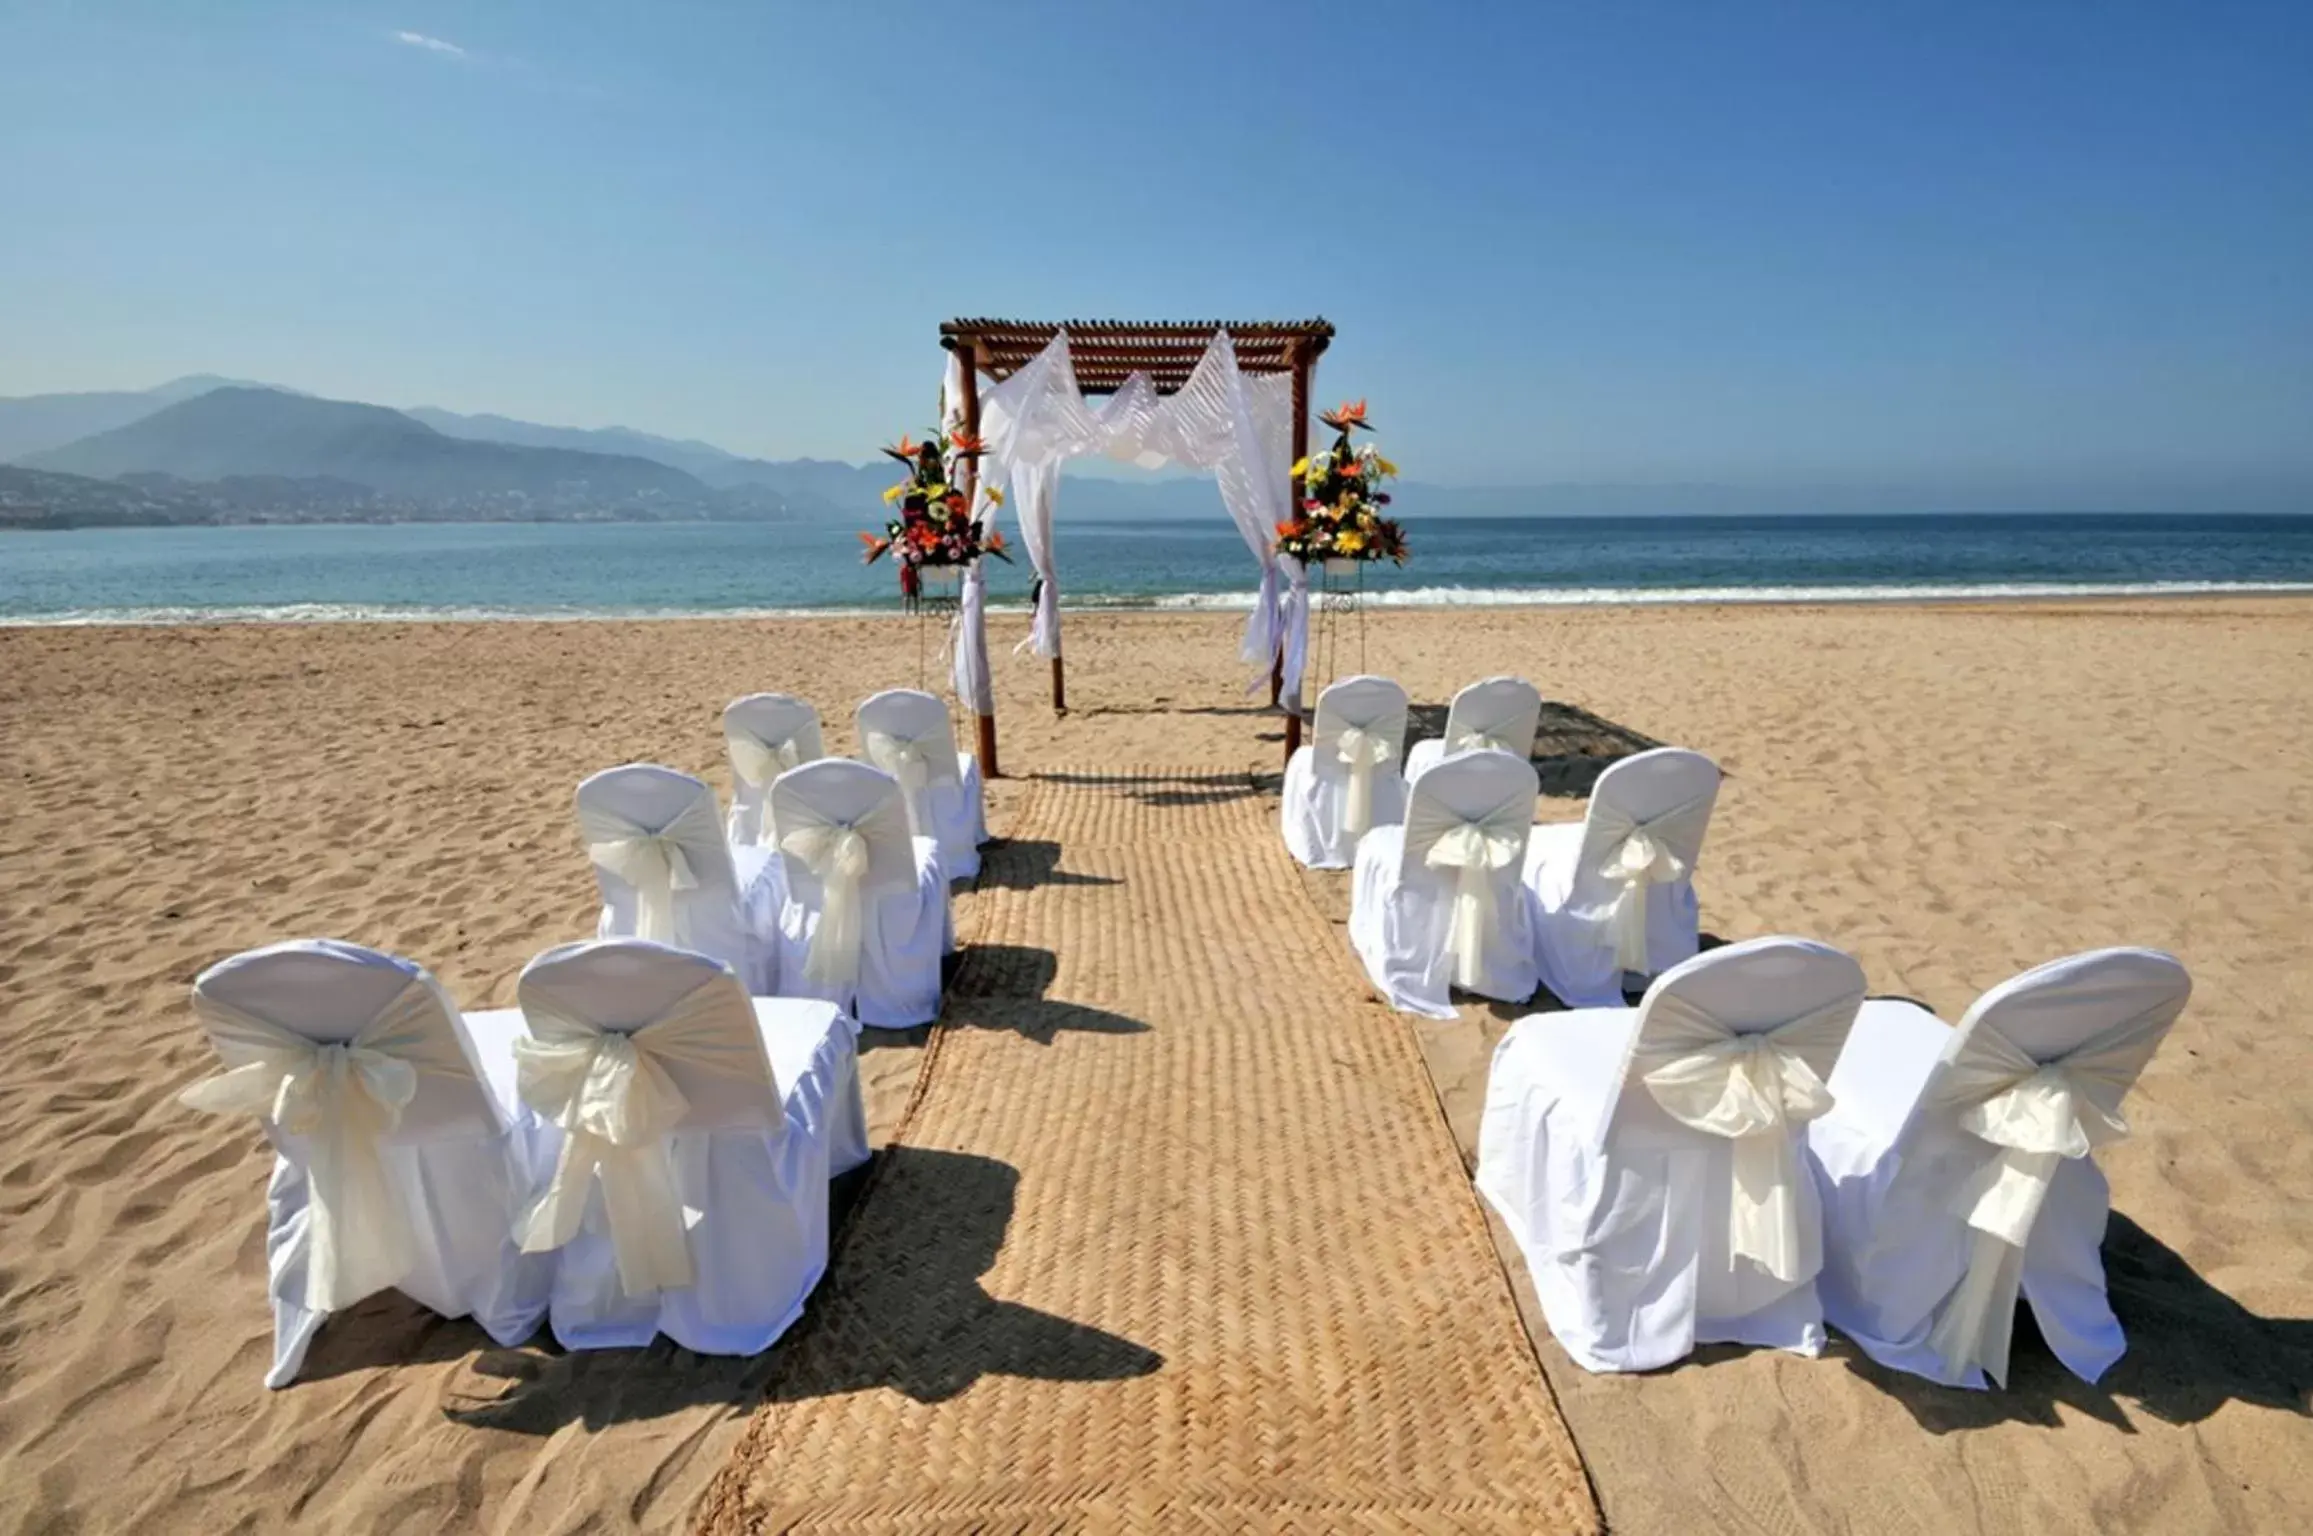 Banquet/Function facilities, Banquet Facilities in Sunscape Puerto Vallarta Resort & Spa - All Inclusive